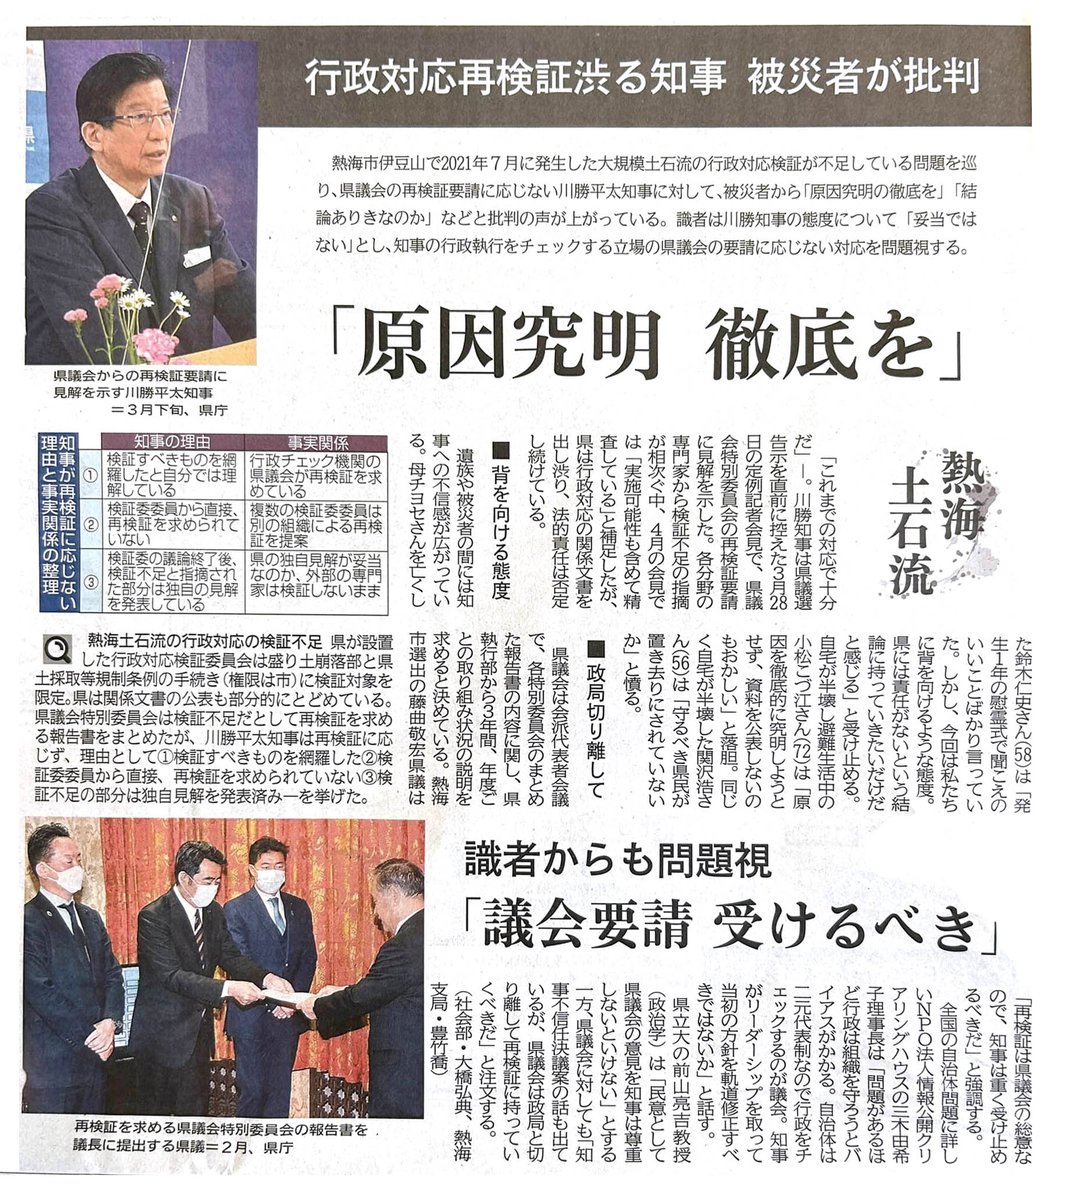 静岡県には解決しなければならない深刻な問題があります。 #静岡県知事選挙 #大村しんいち